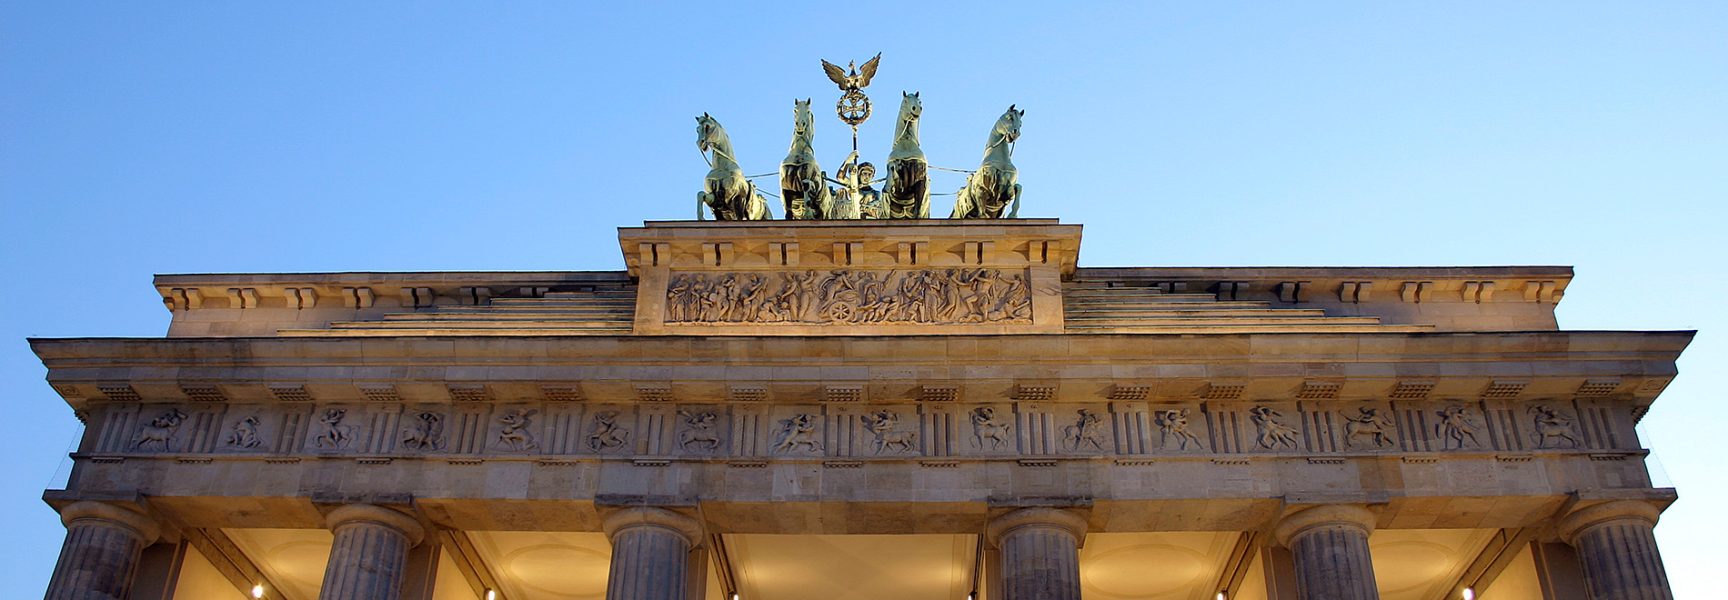 Brandenburg Tor in Berlin, Germany.